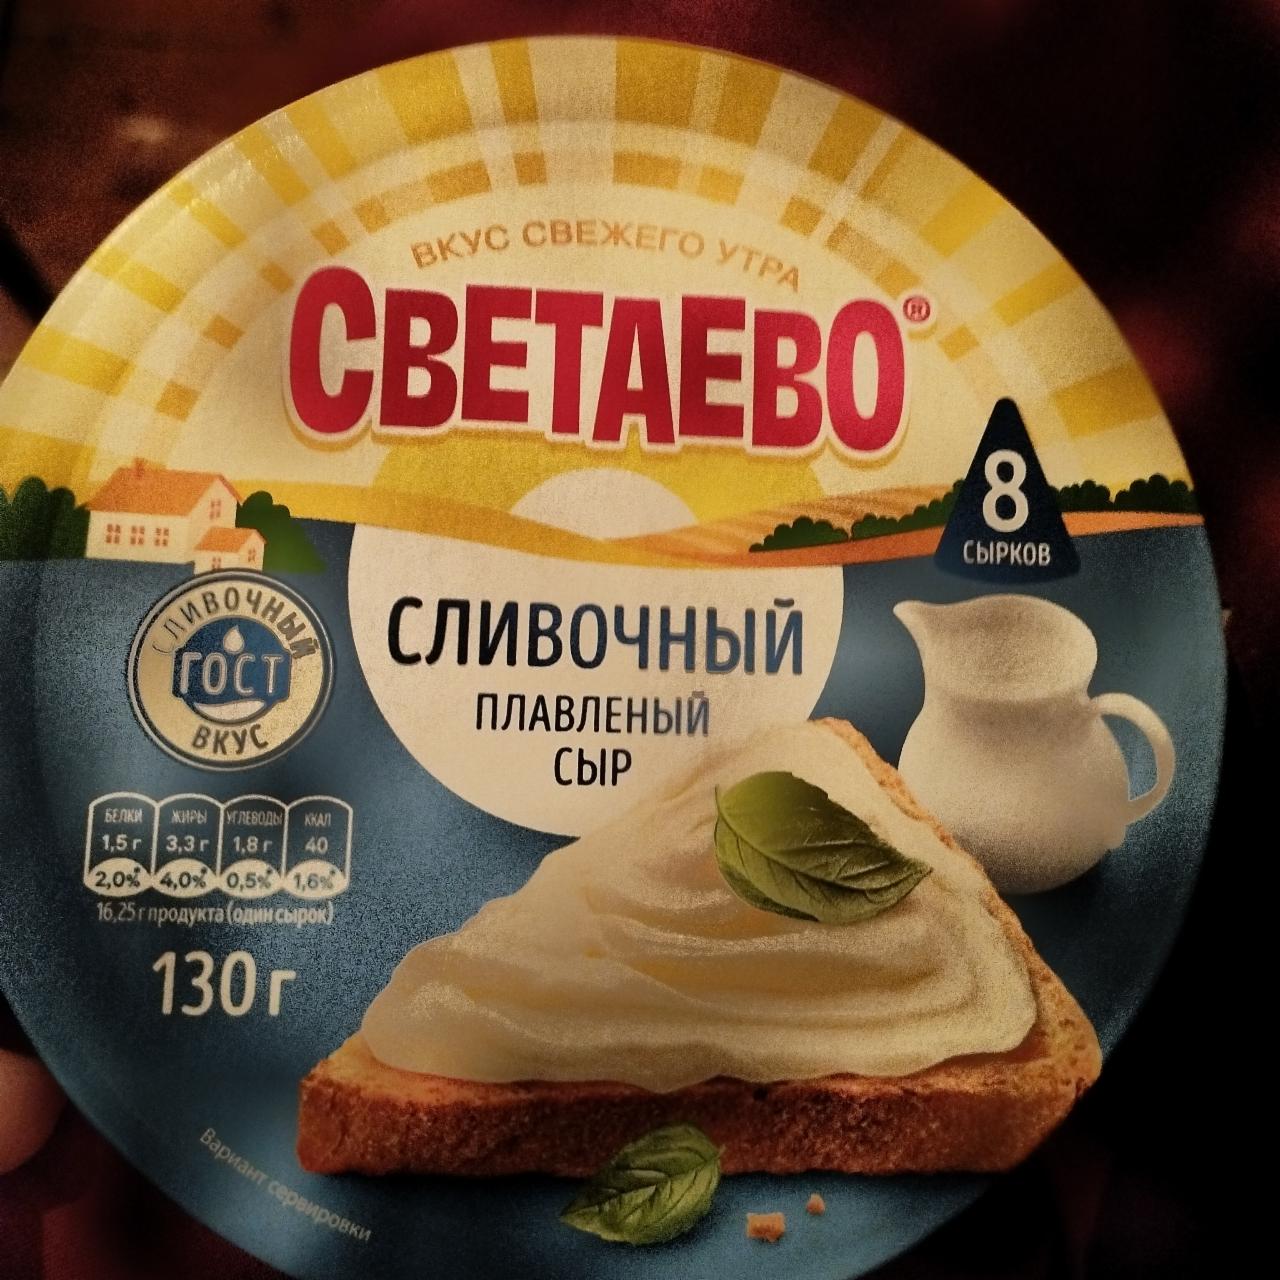 Фото - Сливочный плавленый сыр Светаево